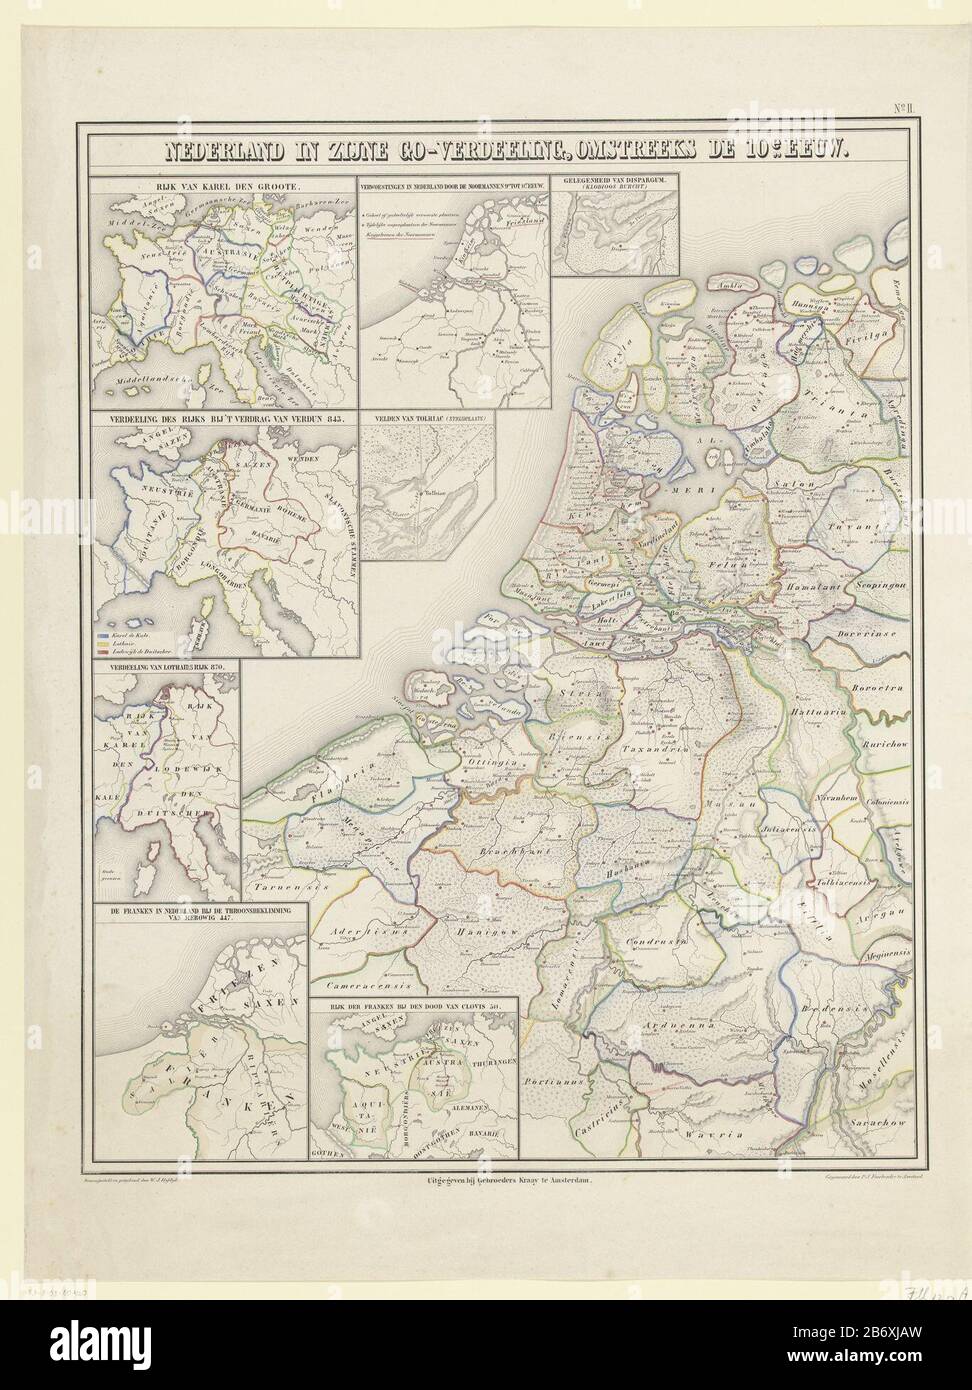 Kaart van de Nederlanden omstreeks de tiende eeuw Nederland in zijne  Go-verdeeling, omstreeks de 10e eeuw (titel op object) Map of the  Netherlands around the tenth century. With various inserts with eight